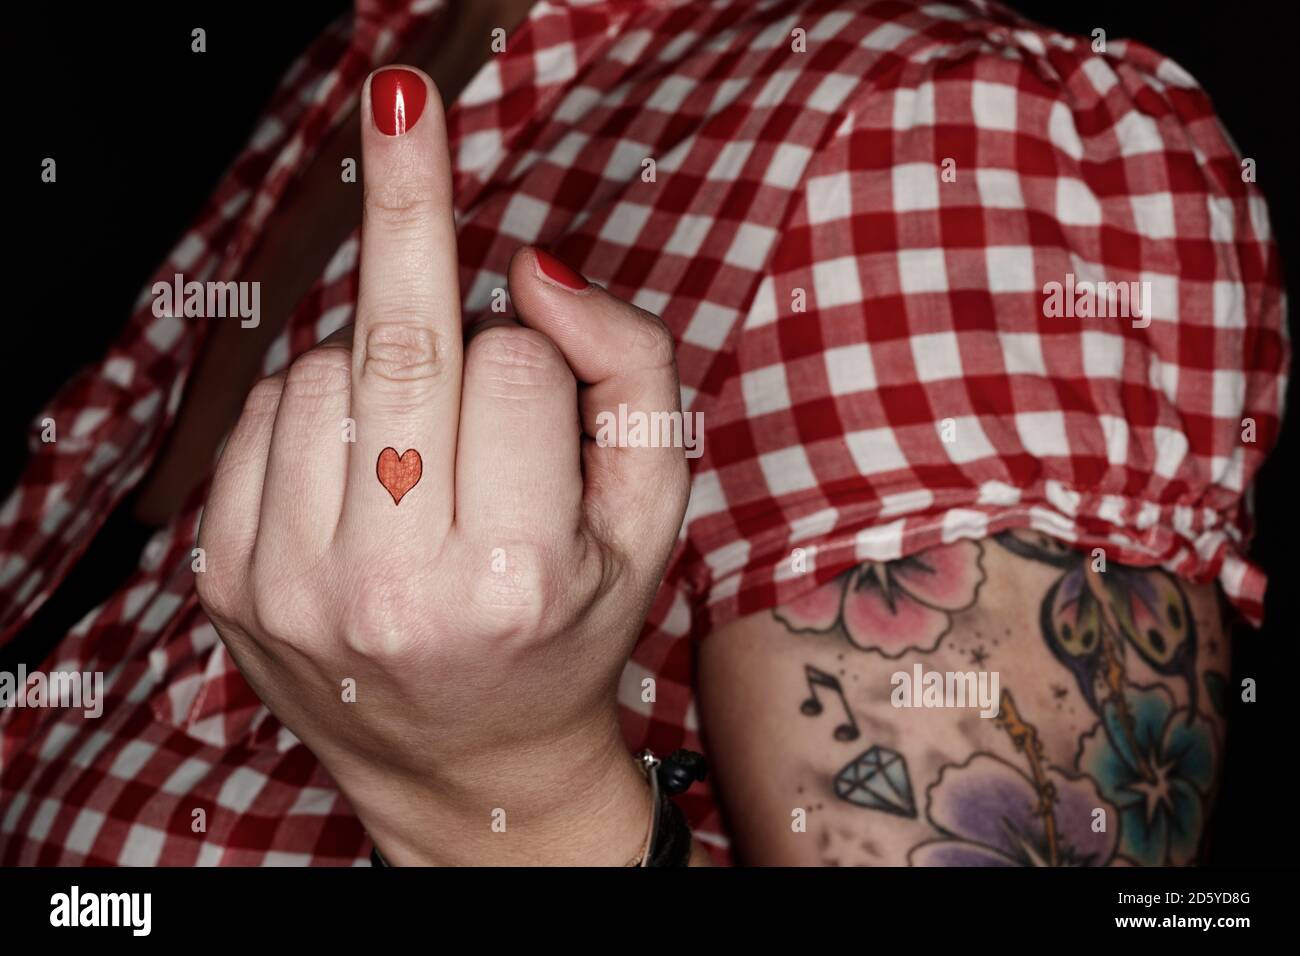 Femme avec tatoos donnant le doigt Banque D'Images